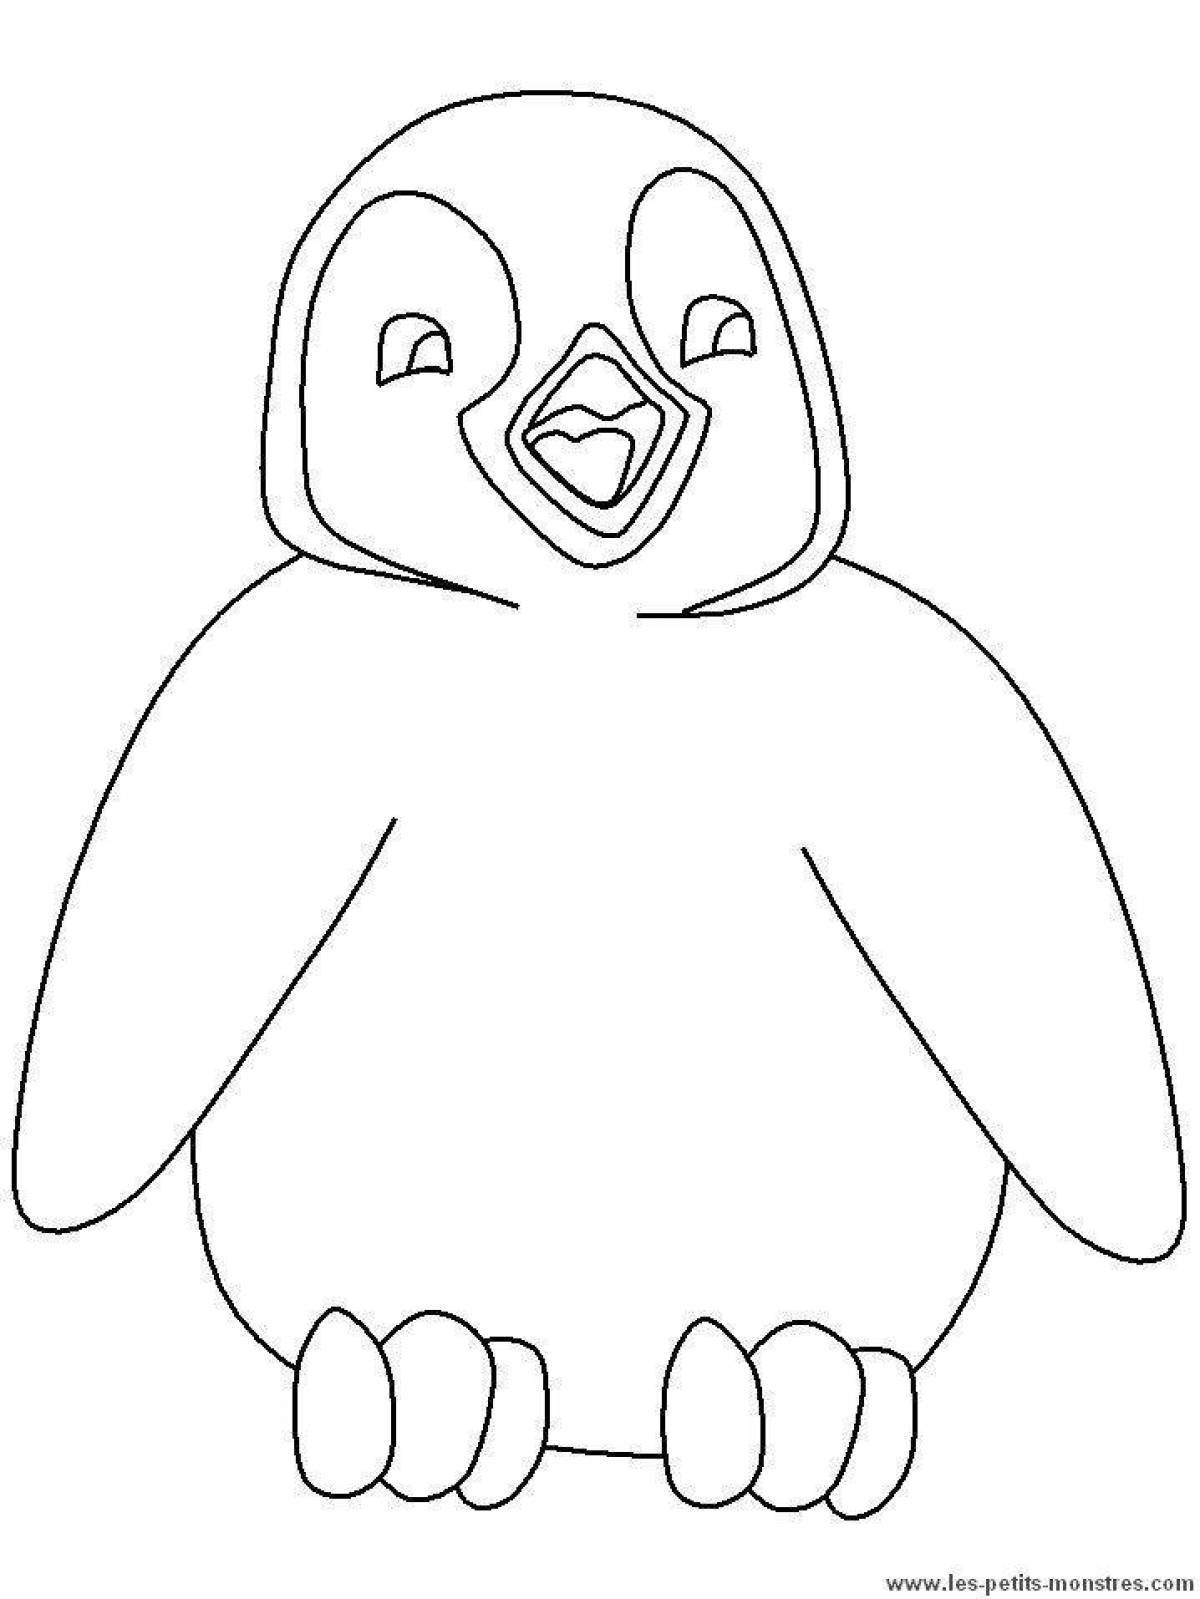 Раскраска Пингвин для детей 3-4 лет